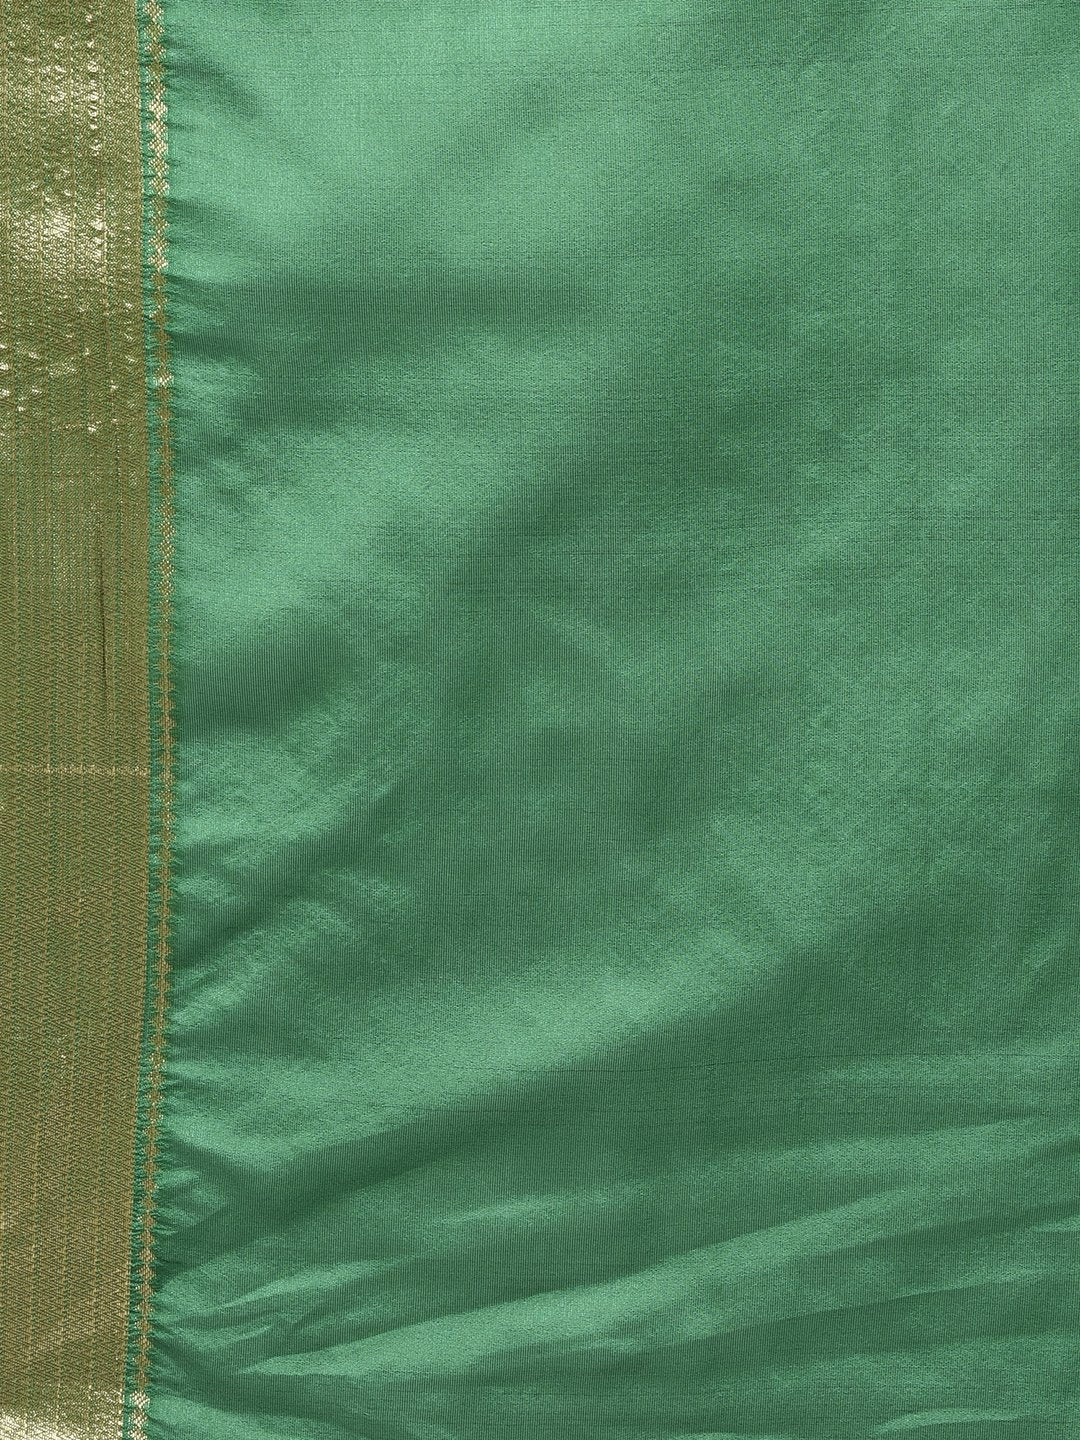 Handloom Saree In Green Color